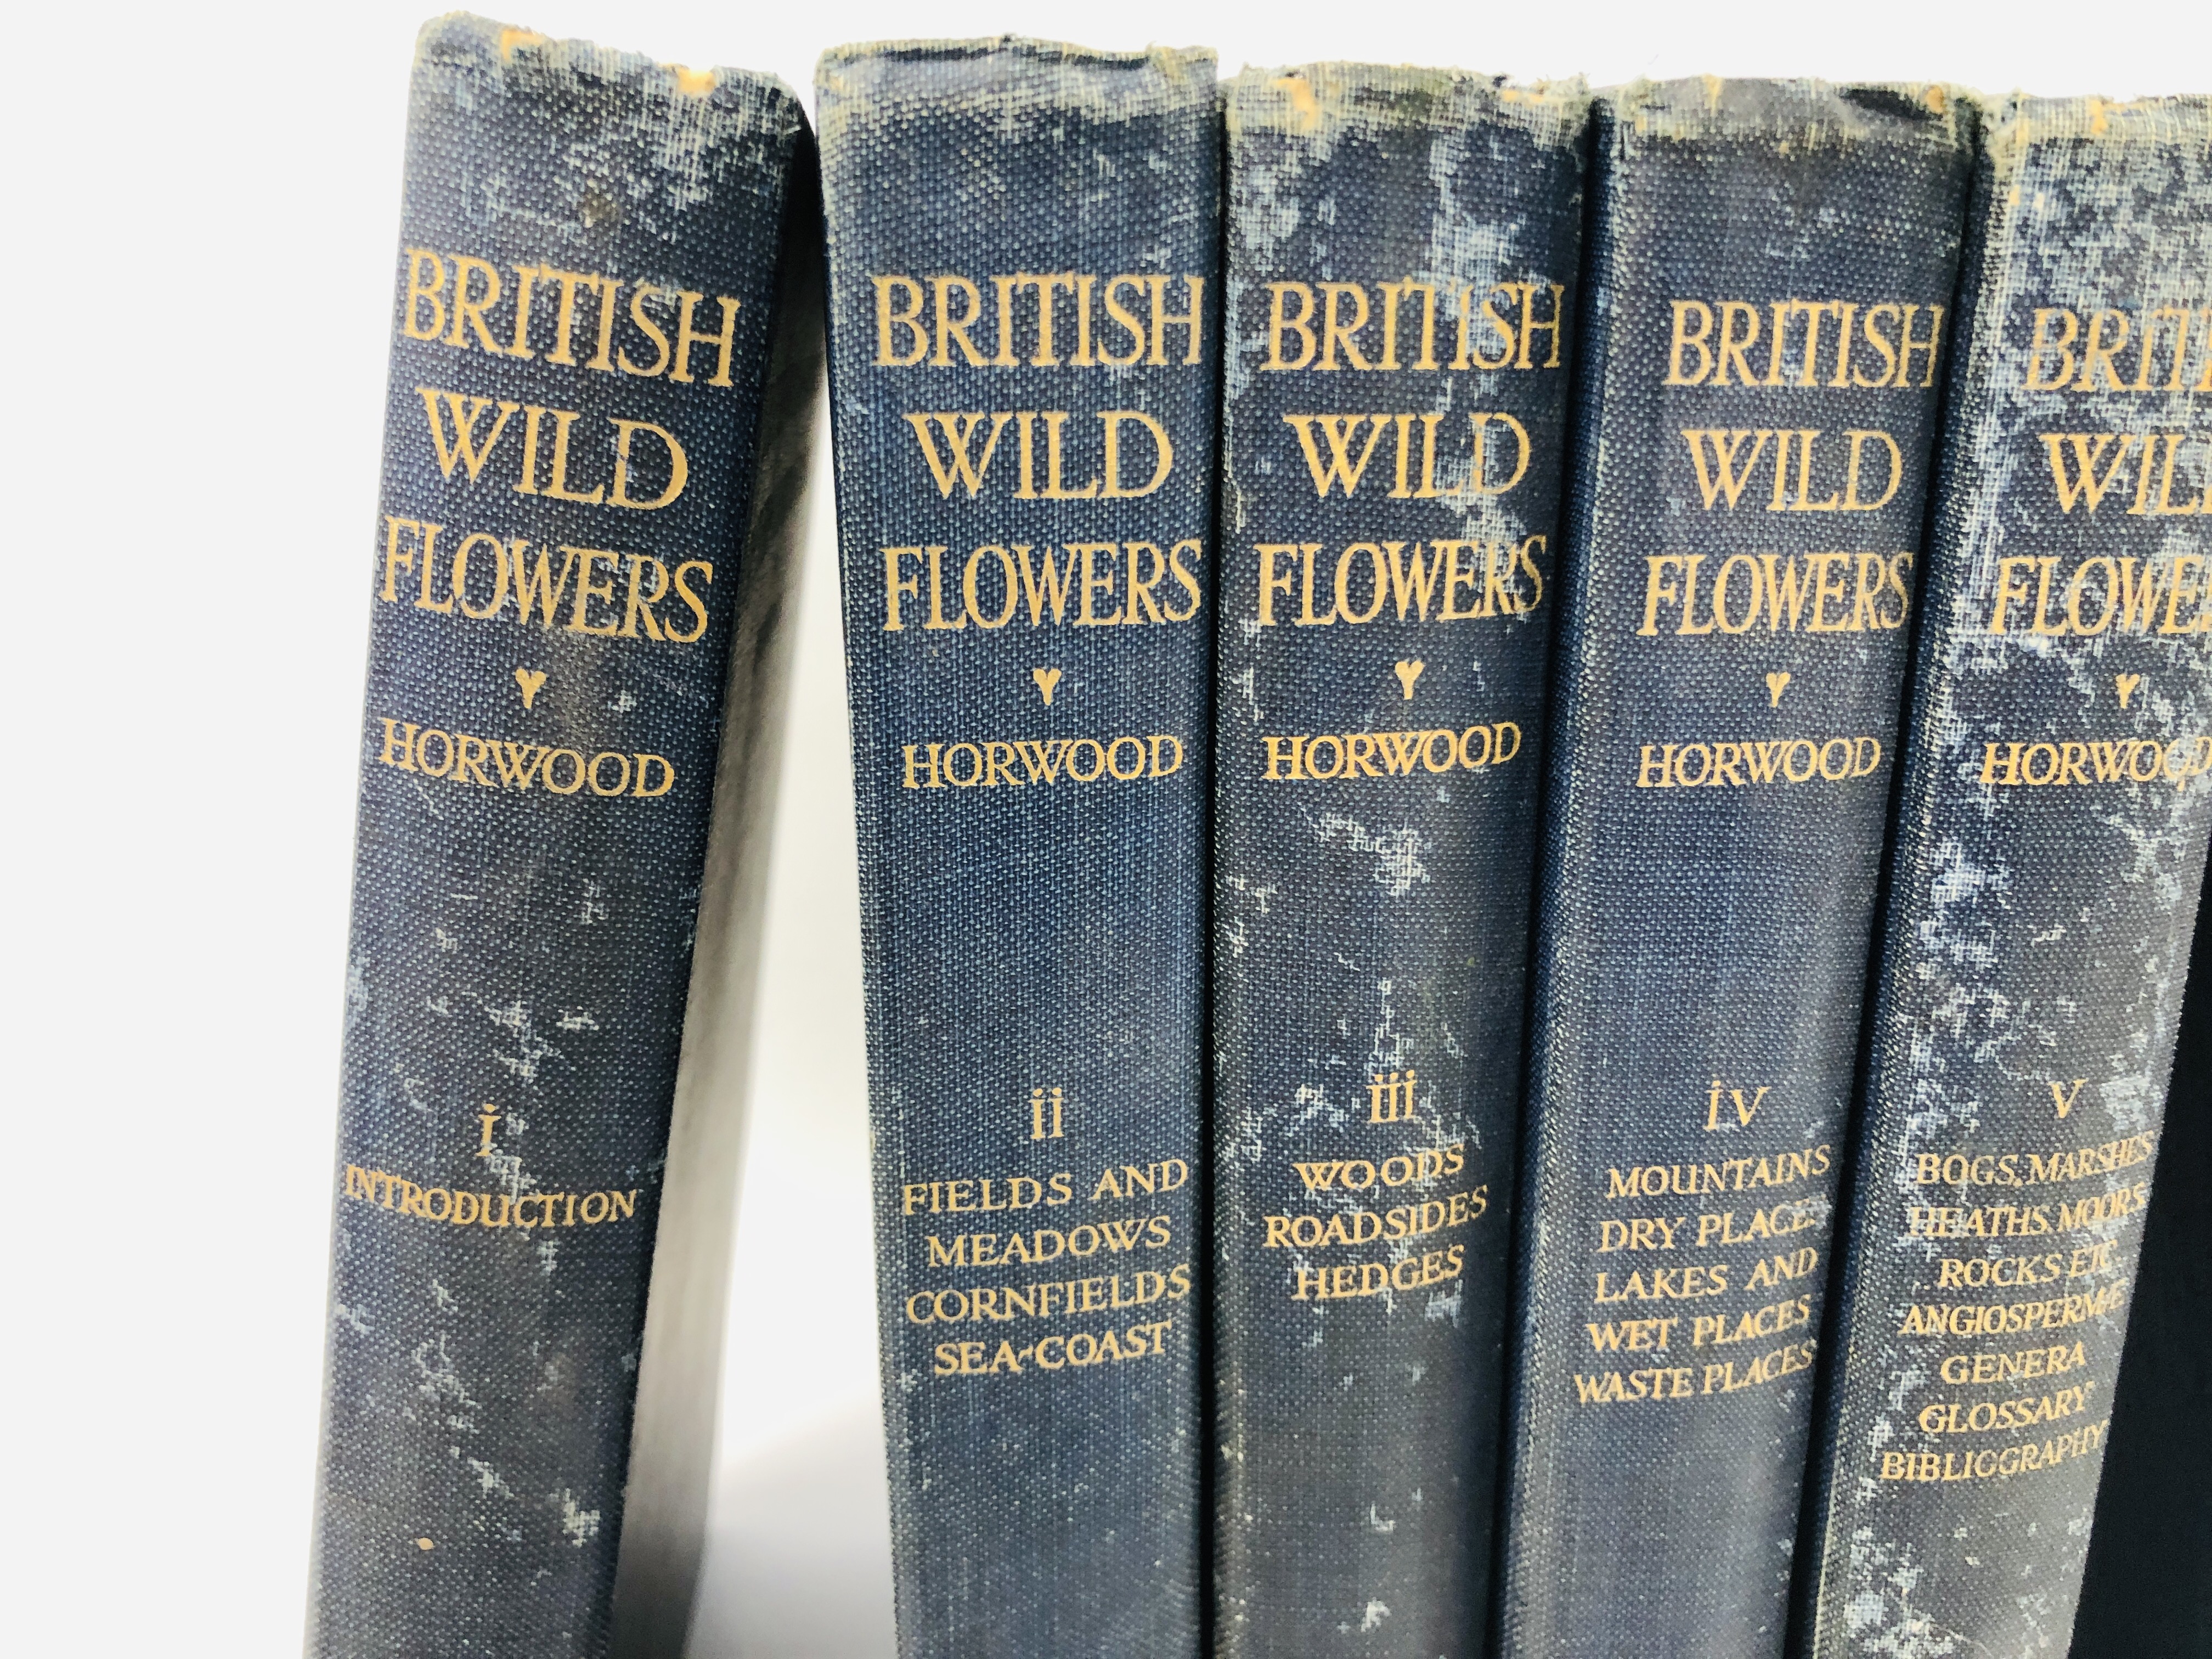 SET OF SIX HARDBACK BOOKS "BRITISH WILD FLOWERS" BY HORWOOD. - Image 2 of 5